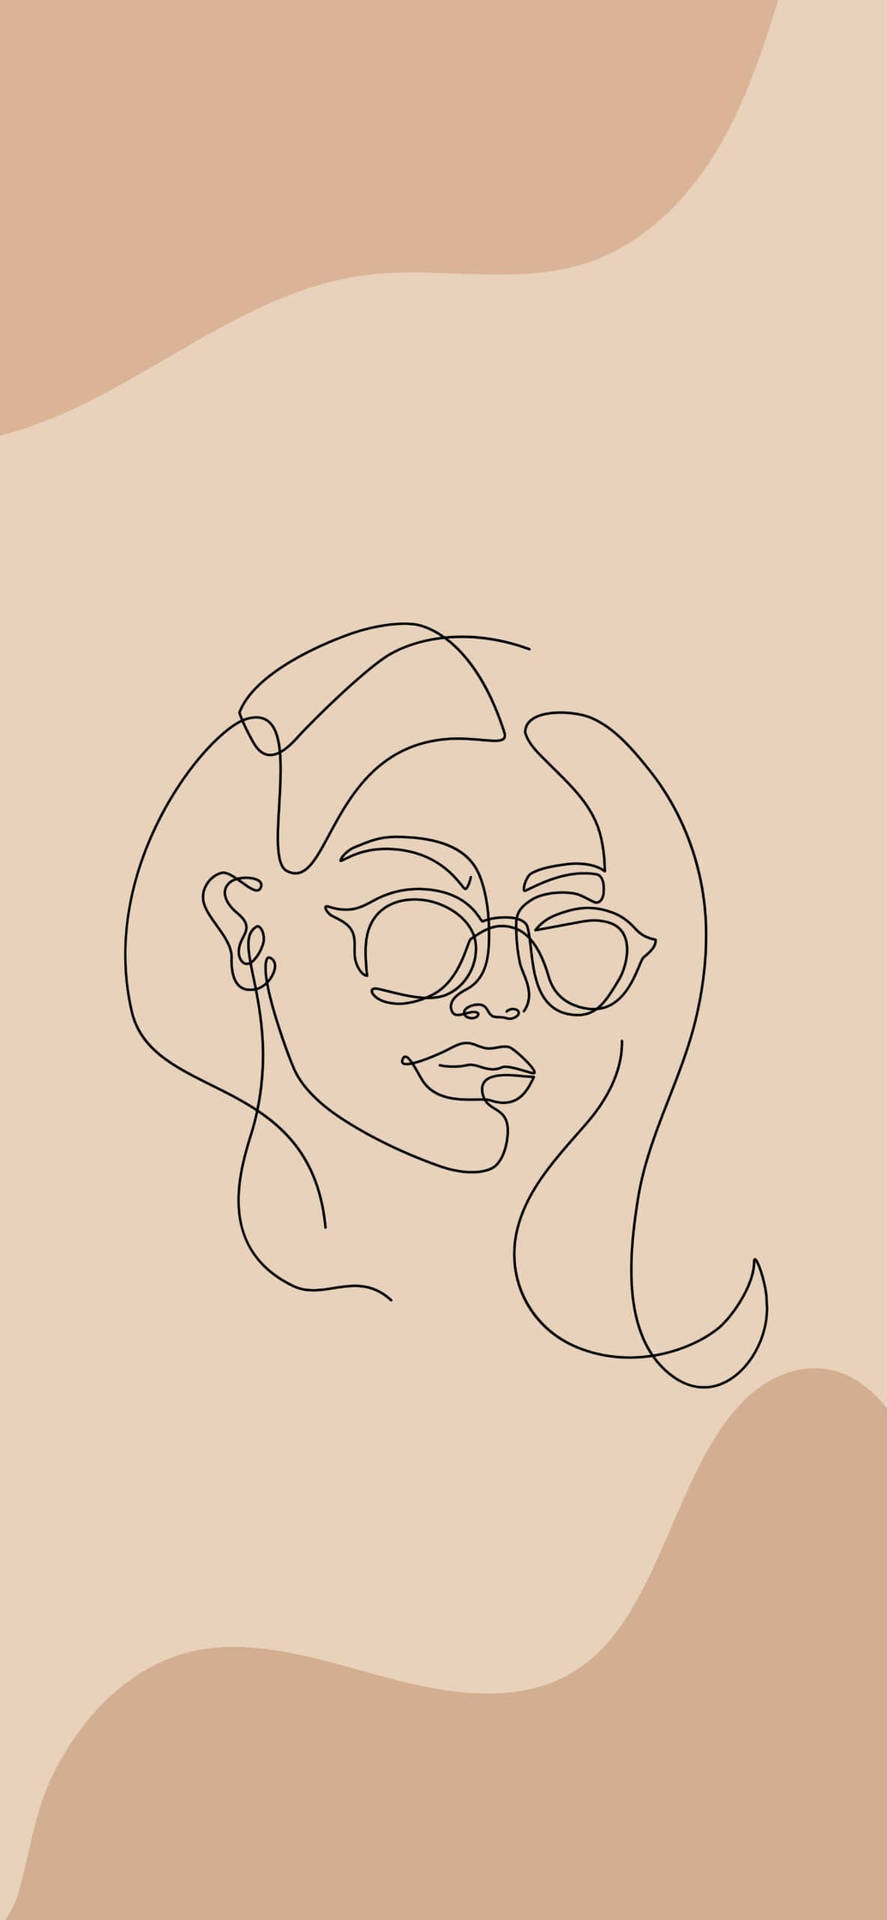 Desenhode Uma Mulher De Óculos De Sol Em Uma Linha. Papel de Parede